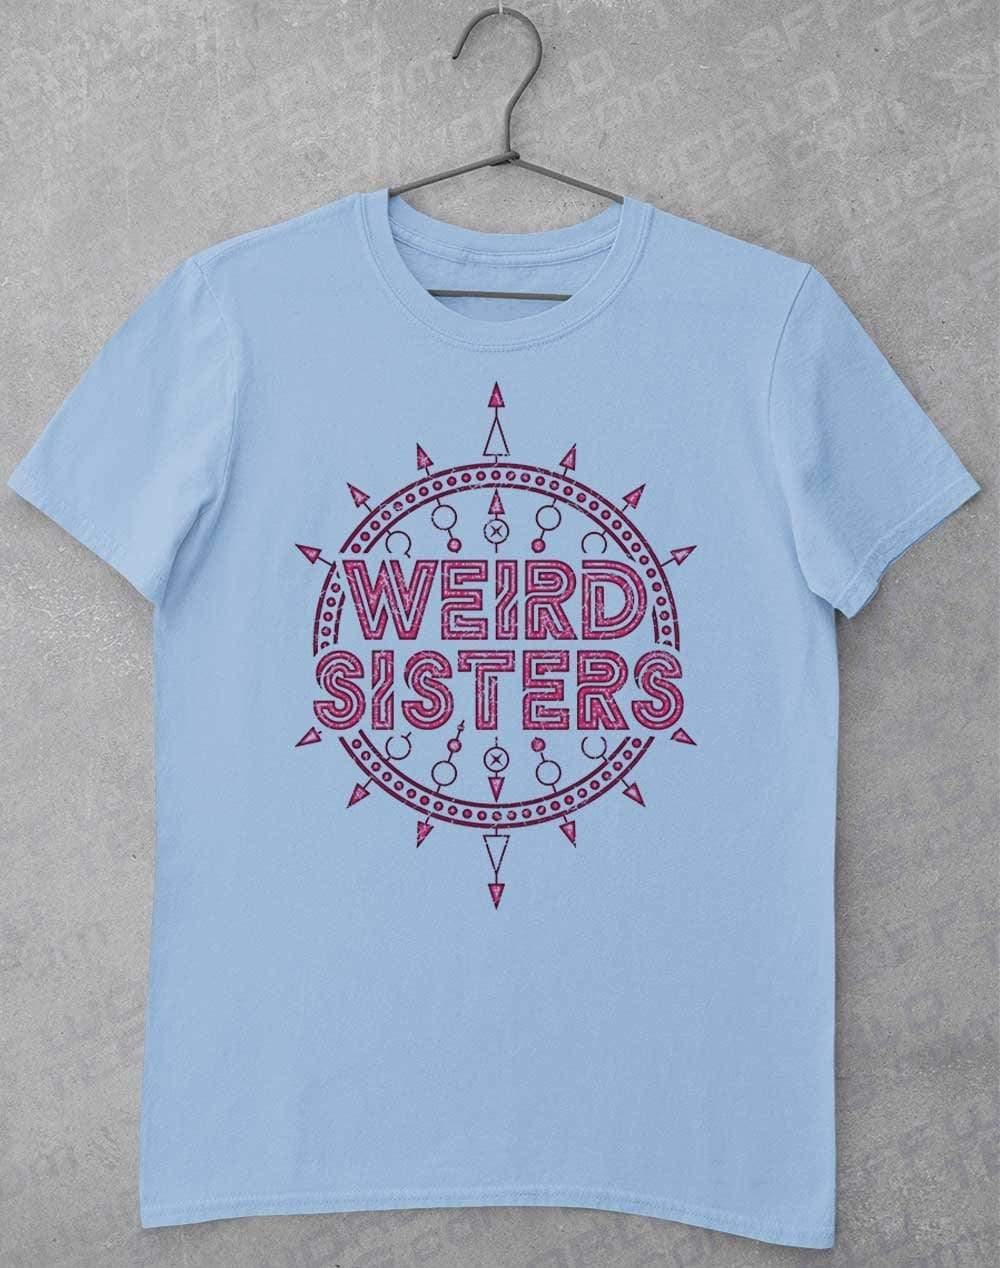 Weird Sisters Band Logo T-Shirt S / Light Blue  - Off World Tees